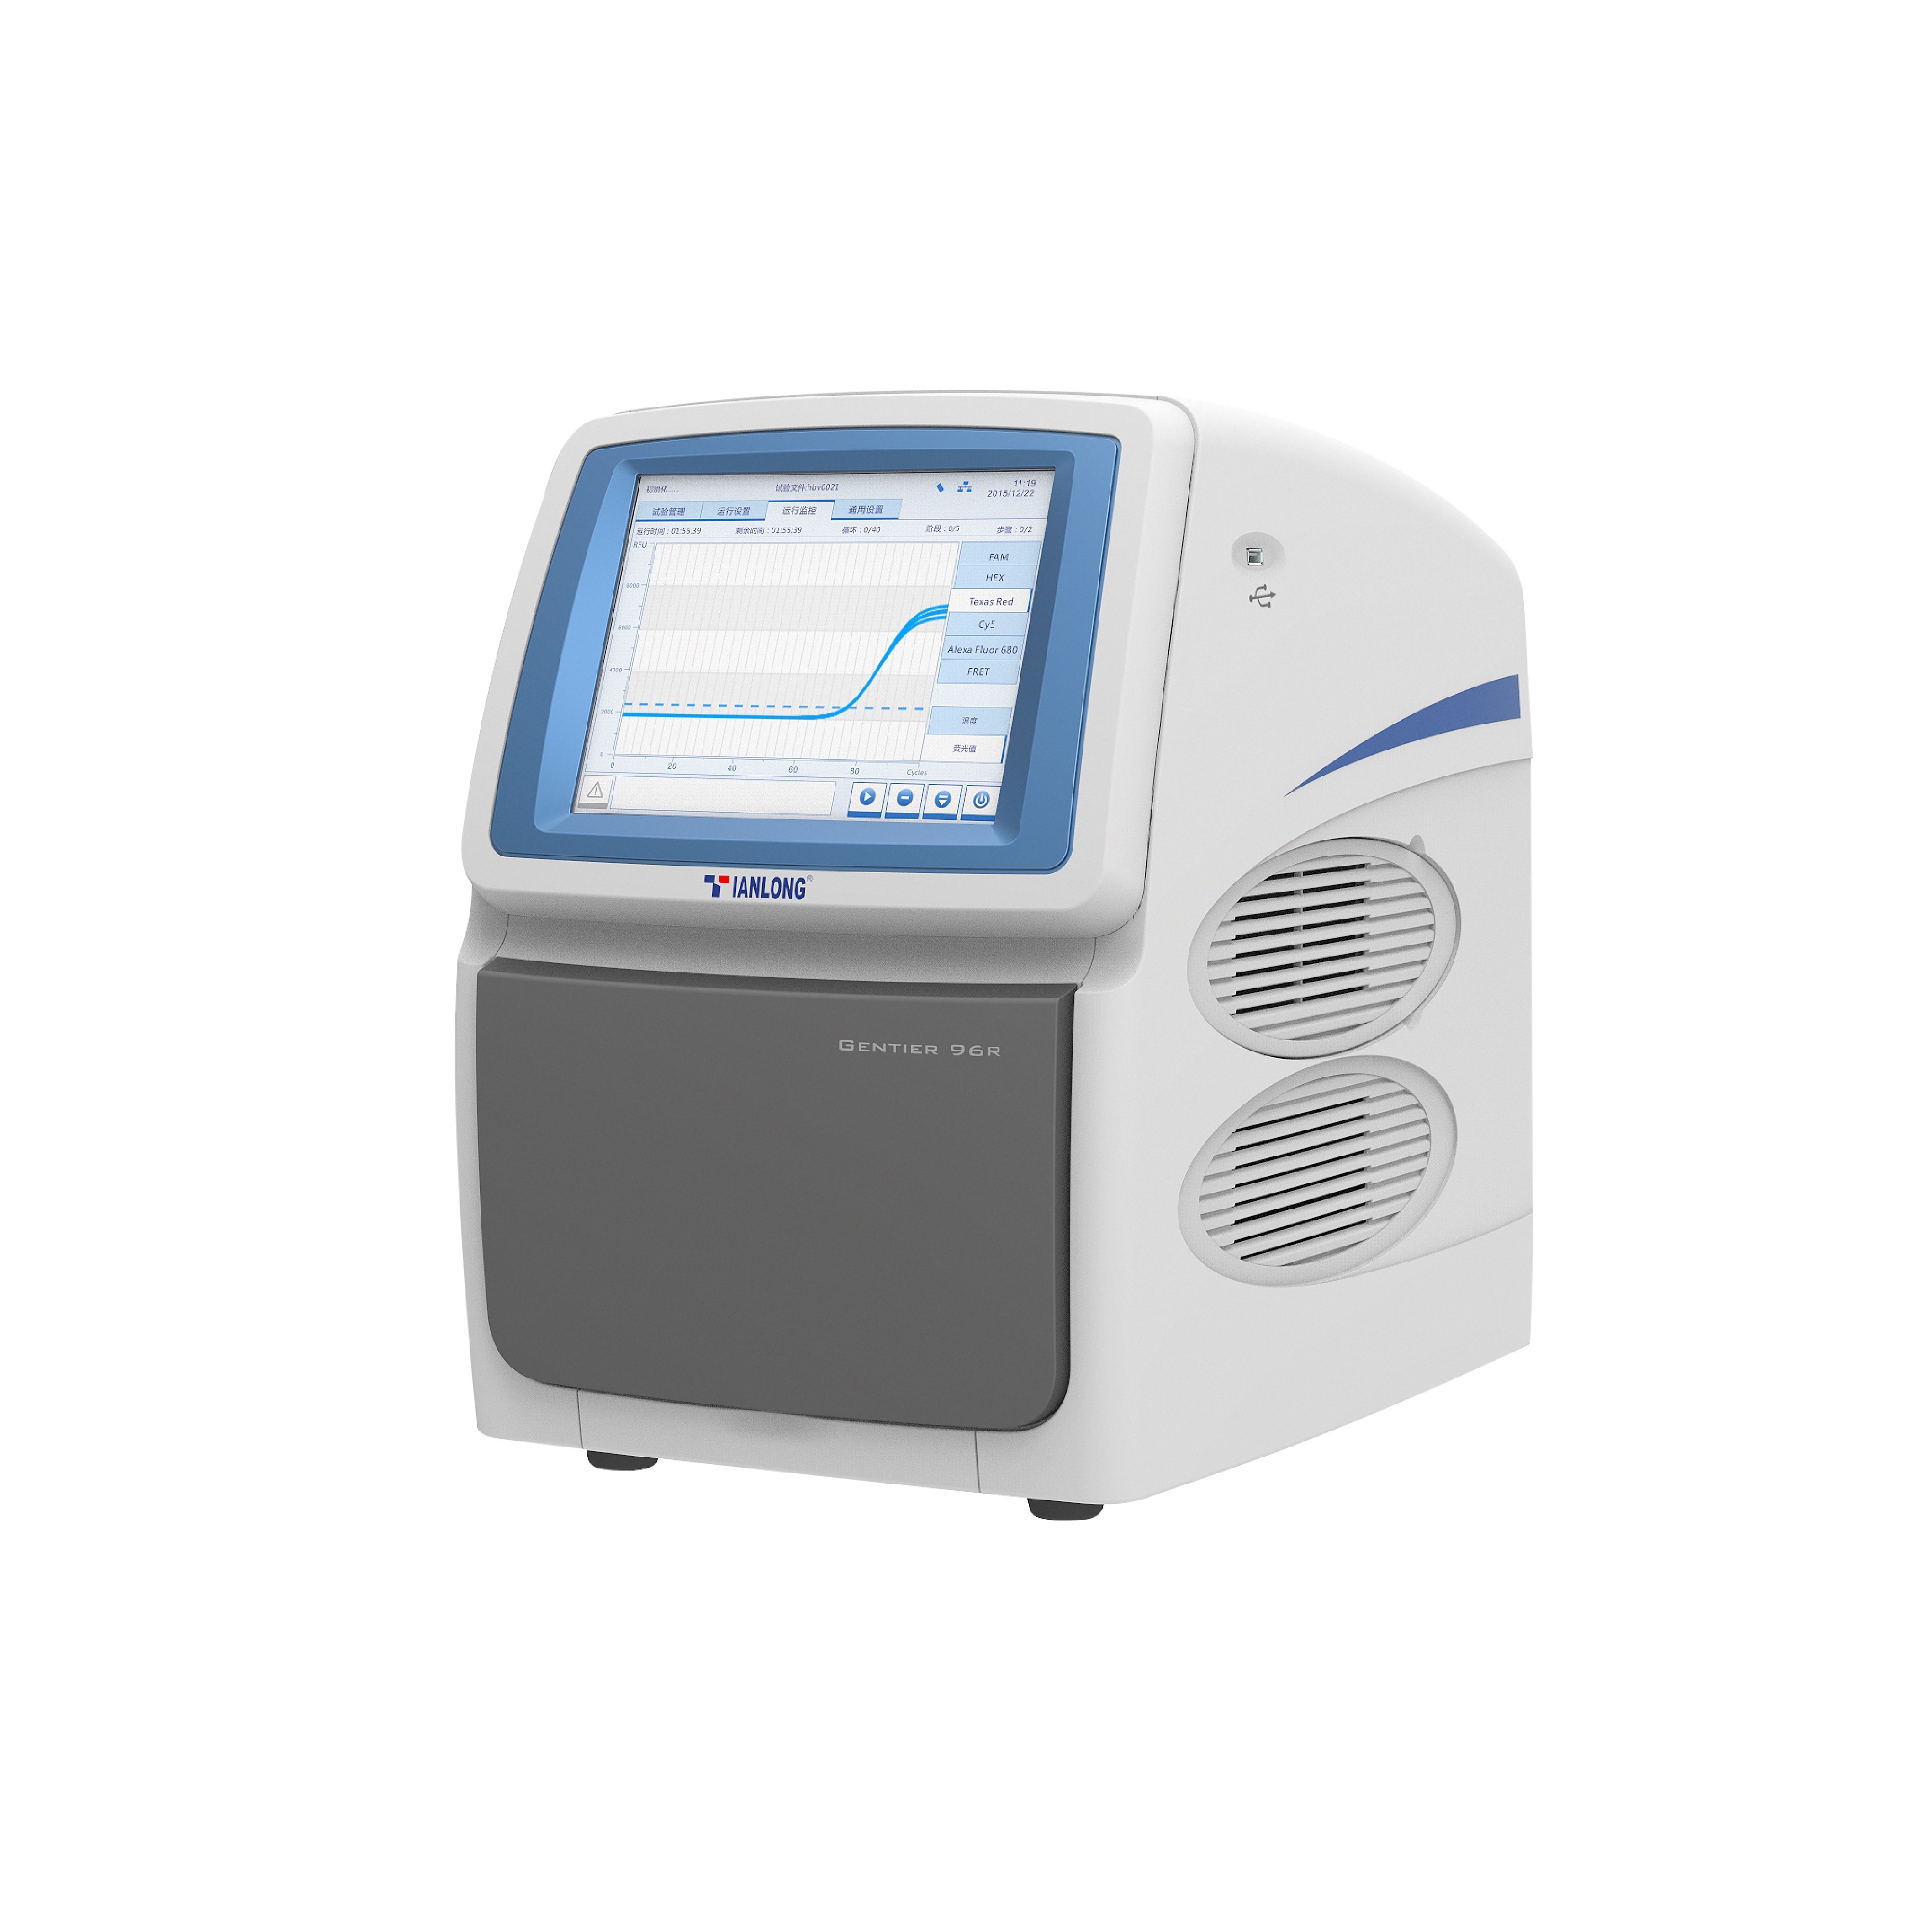 دستگاه ریل تایم پی سی آر - جنتایر 96 ای	 - Real-time PCR Systems - Gentier 96E	 - Xi’an Tianlong Science & Technology CO.,LTD	 - دستگاه - سلولی و مولکولی - وستا تجهیز پارت